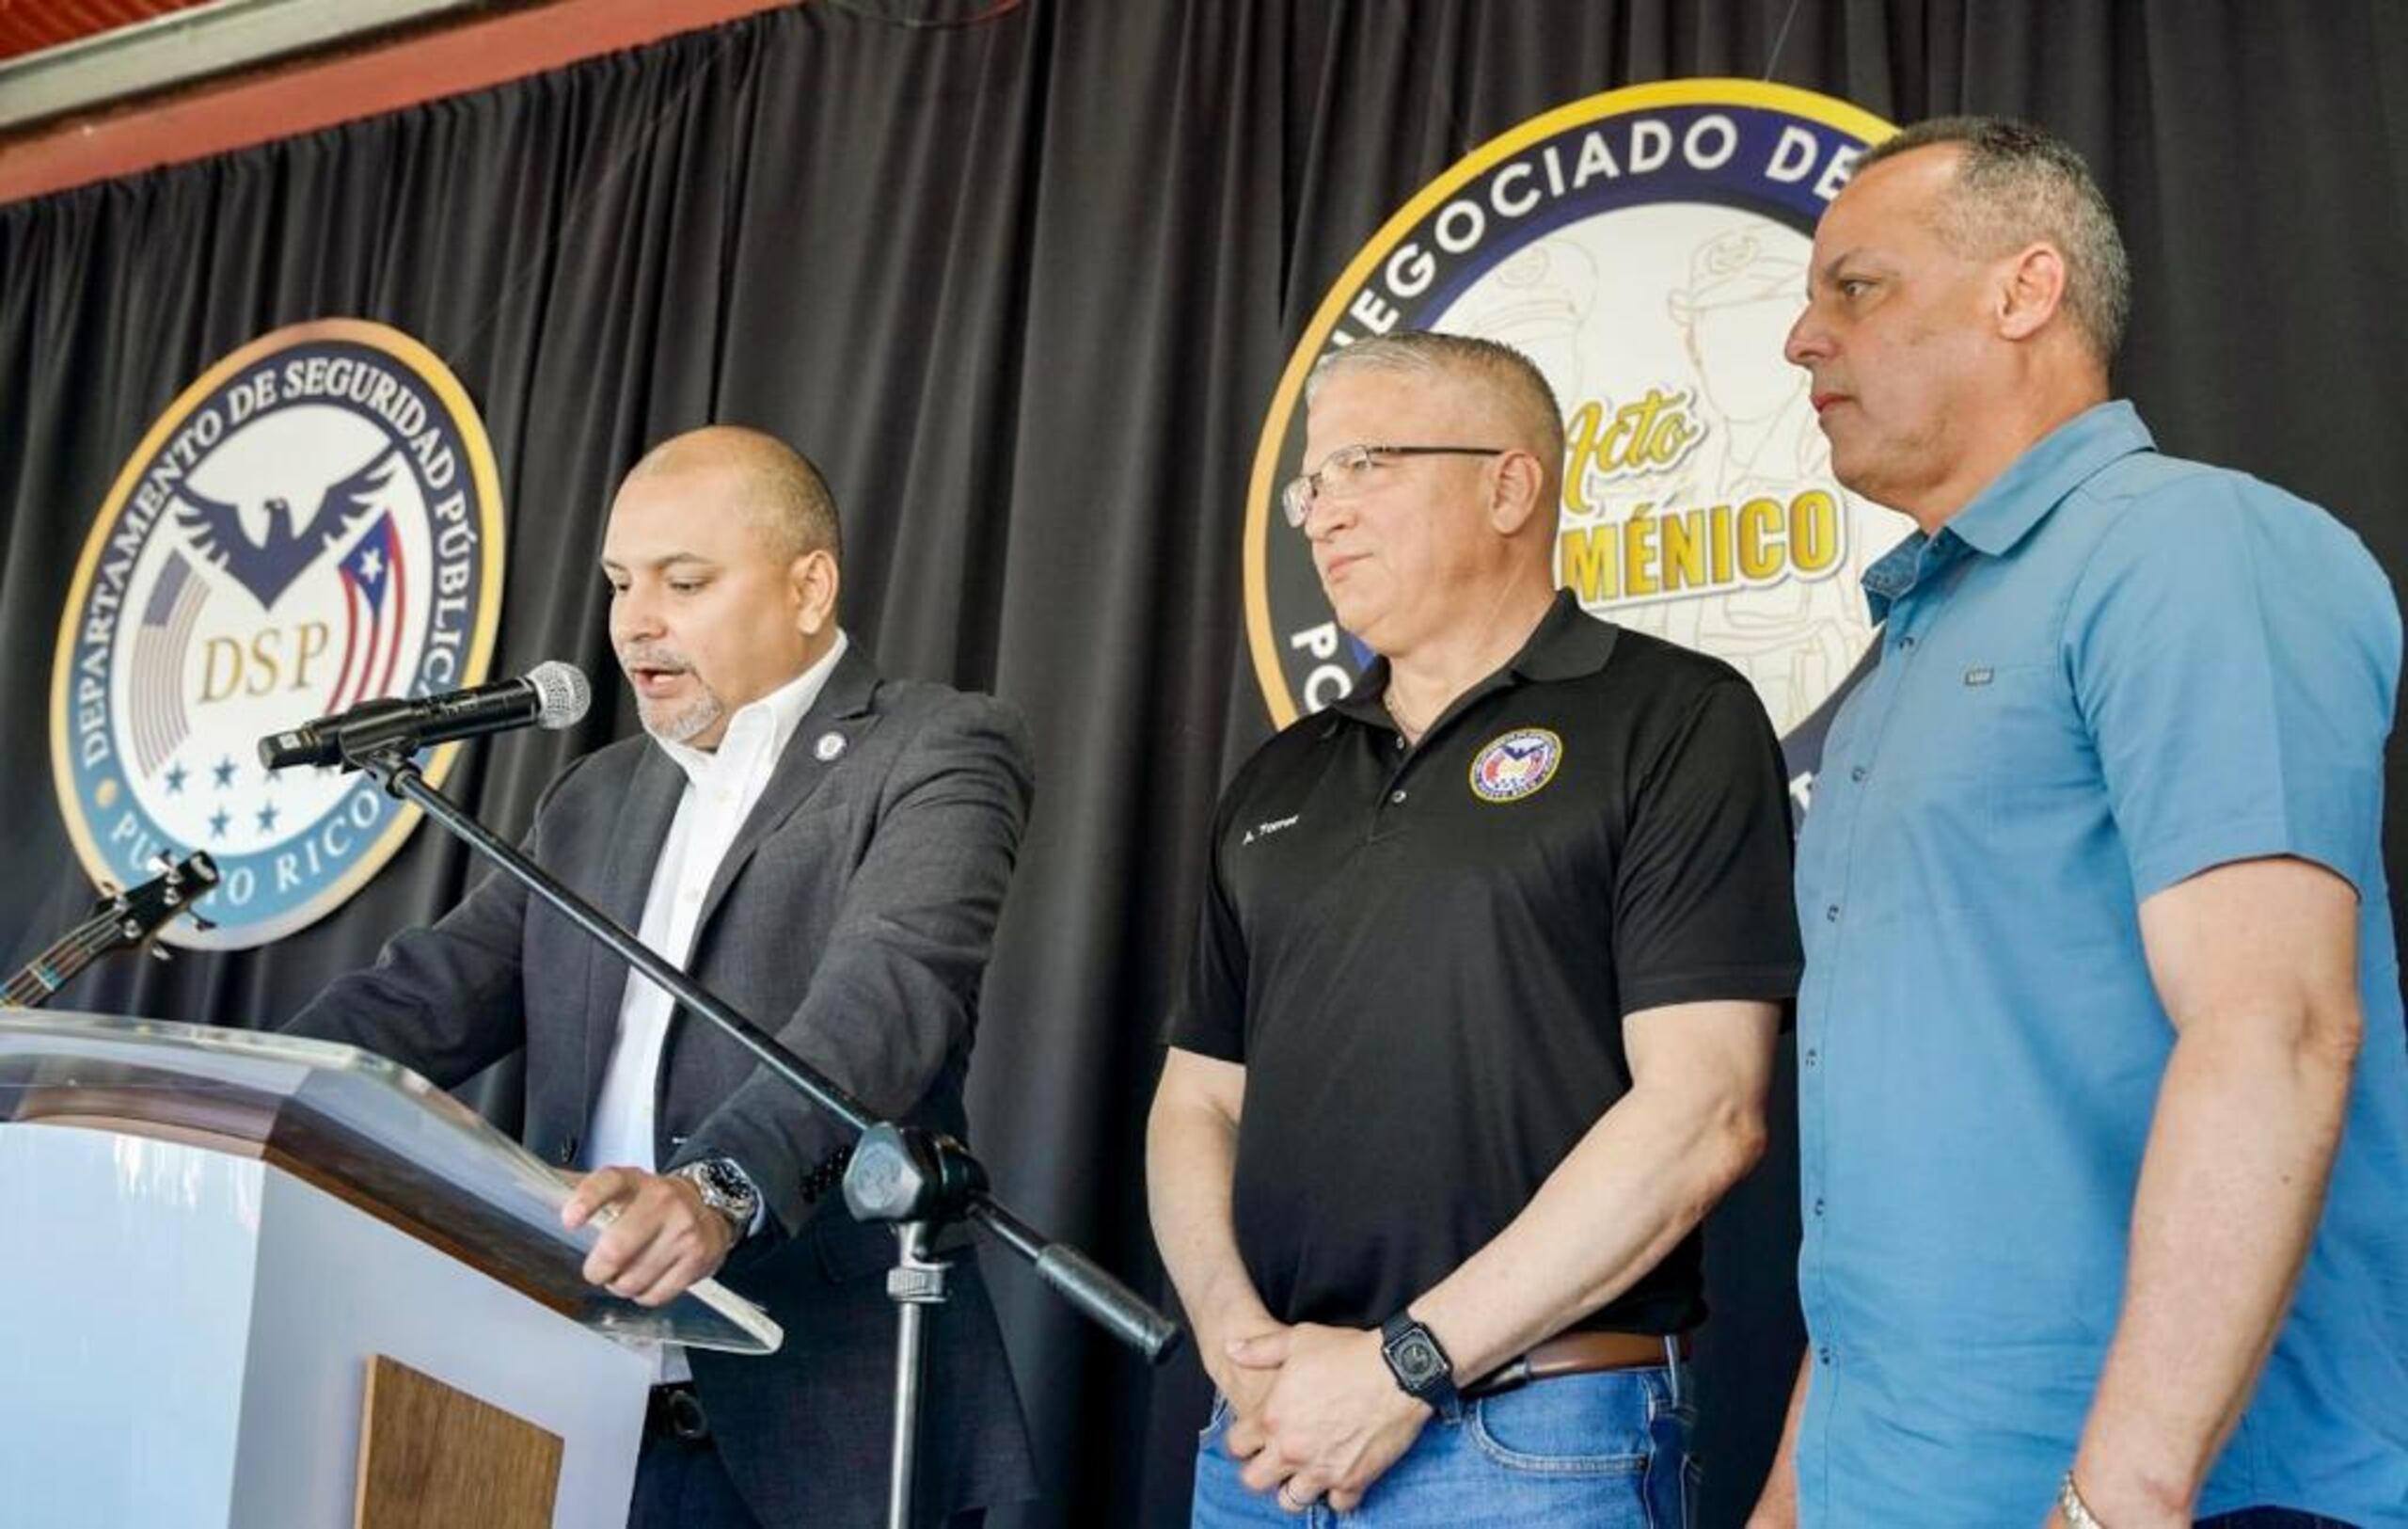 El secretario de Estado Adjunto, Félix A. Lizasuaín Martínez, entregó la proclama de la semana de la Policía, a su comisionado, Antonio López y al secretario del DSP, Alexis Torres.